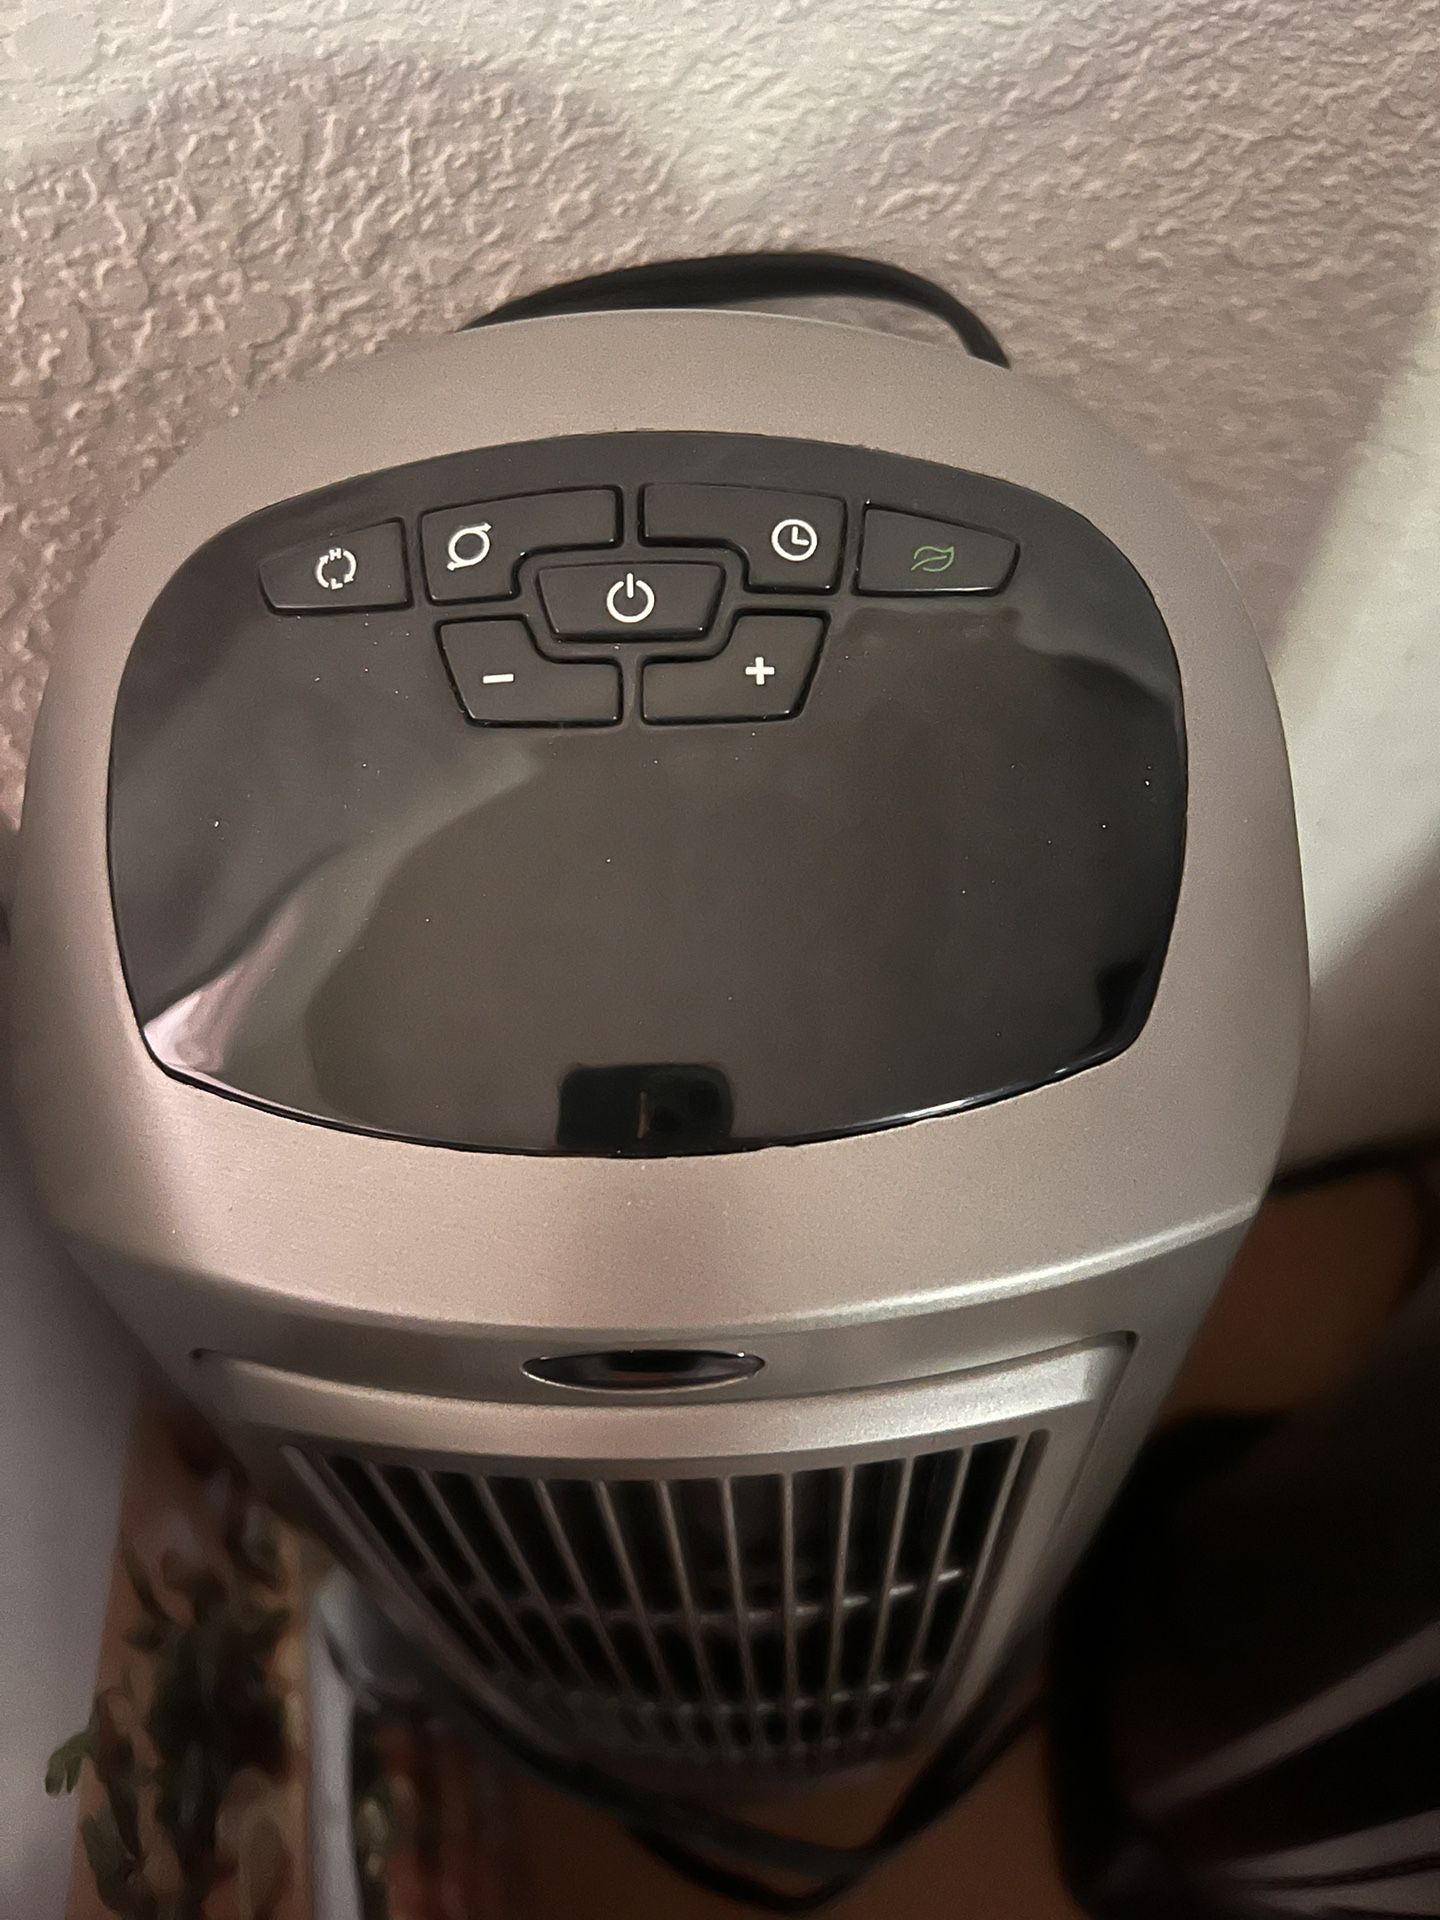 Portable Heater/Fan